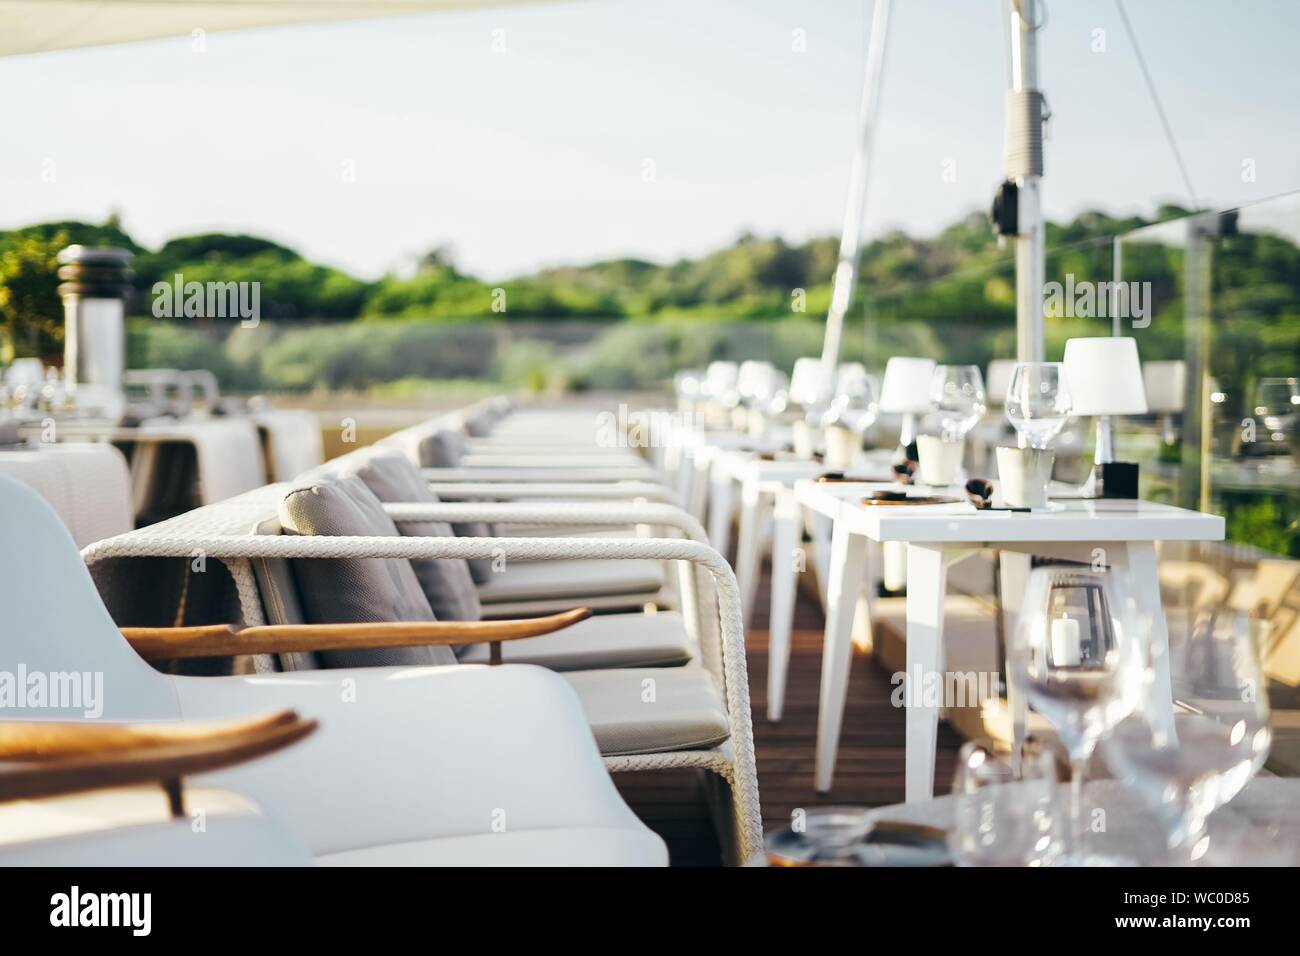 Mise au point sélective de fauteuils blancs autour de tables blanches avec verres à vin et lampes sur eux Banque D'Images